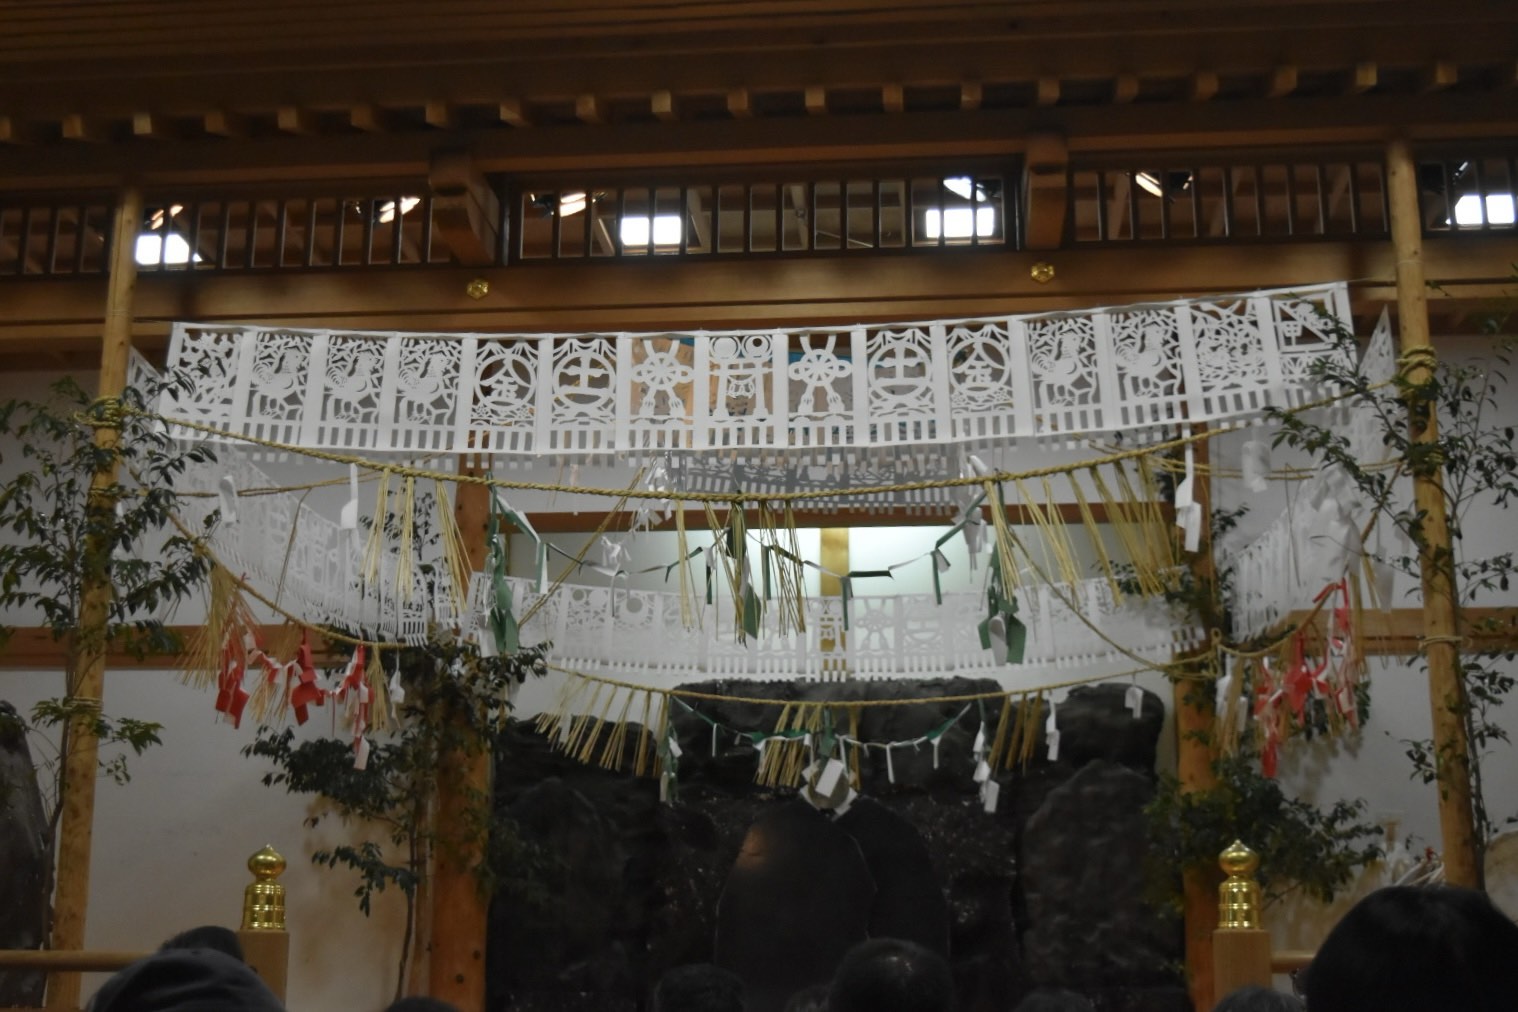 高千穂神社の神楽殿